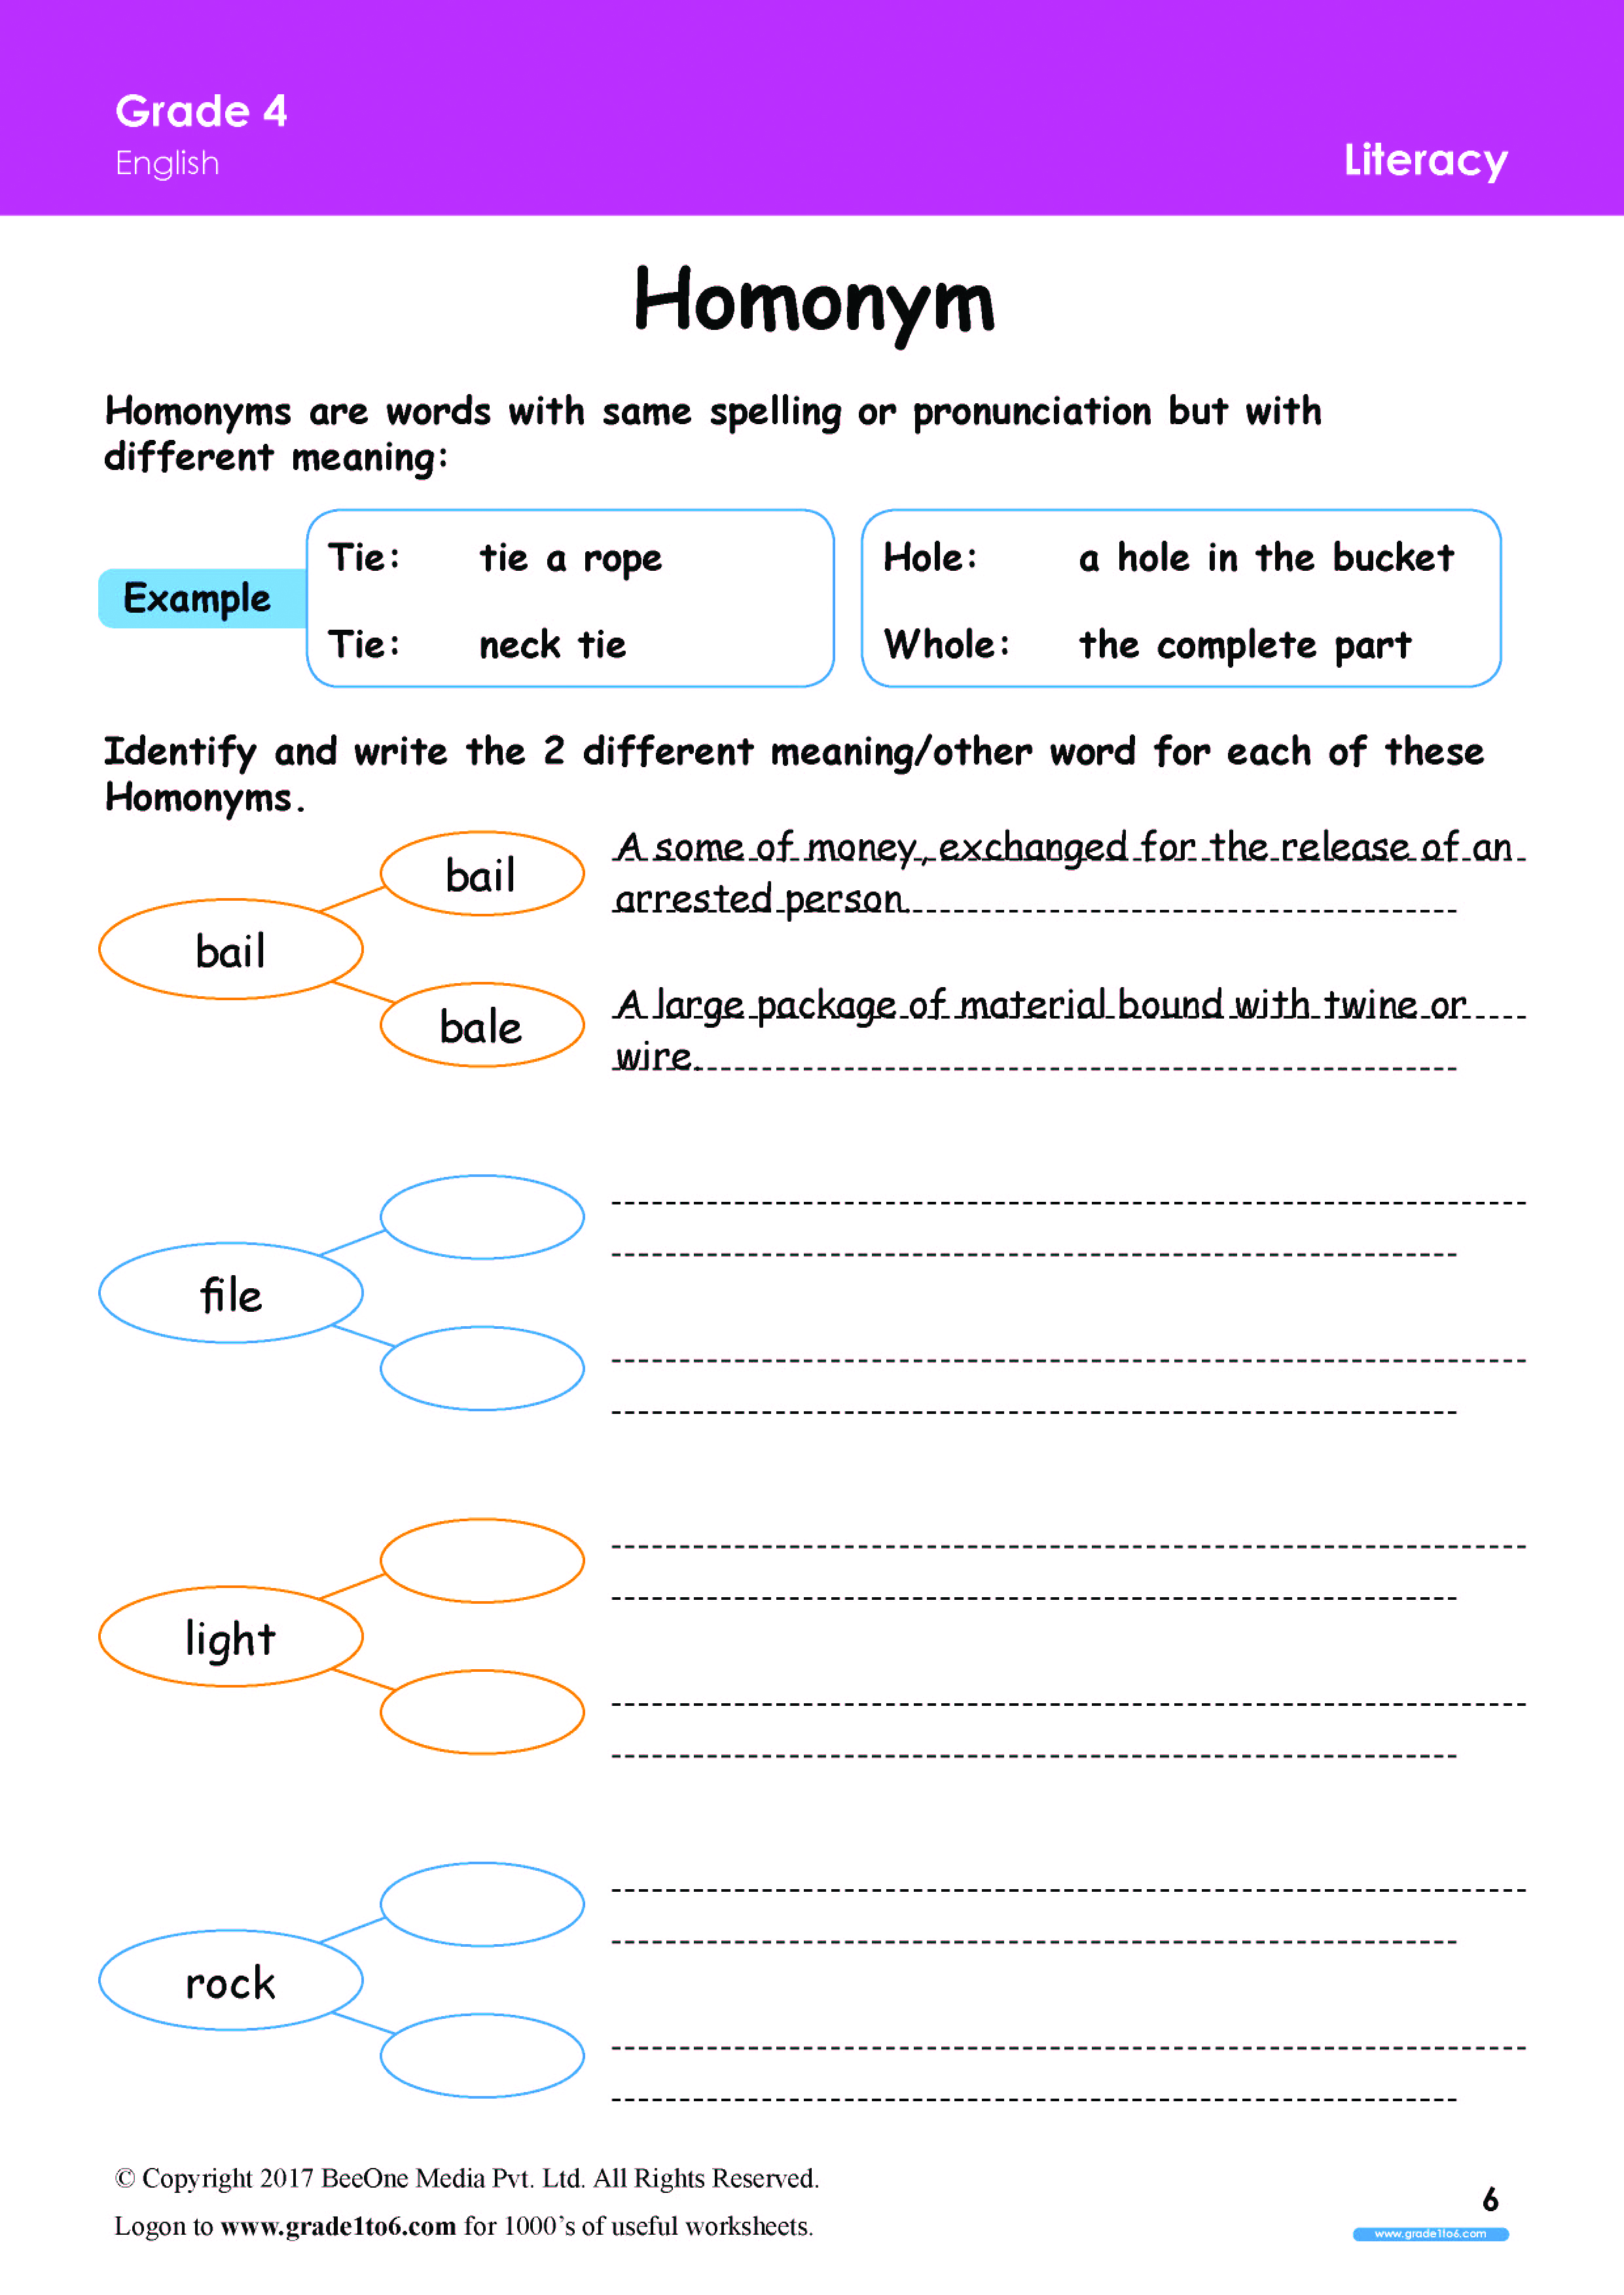 homonym worksheets for grade 4 www grade1to6 com